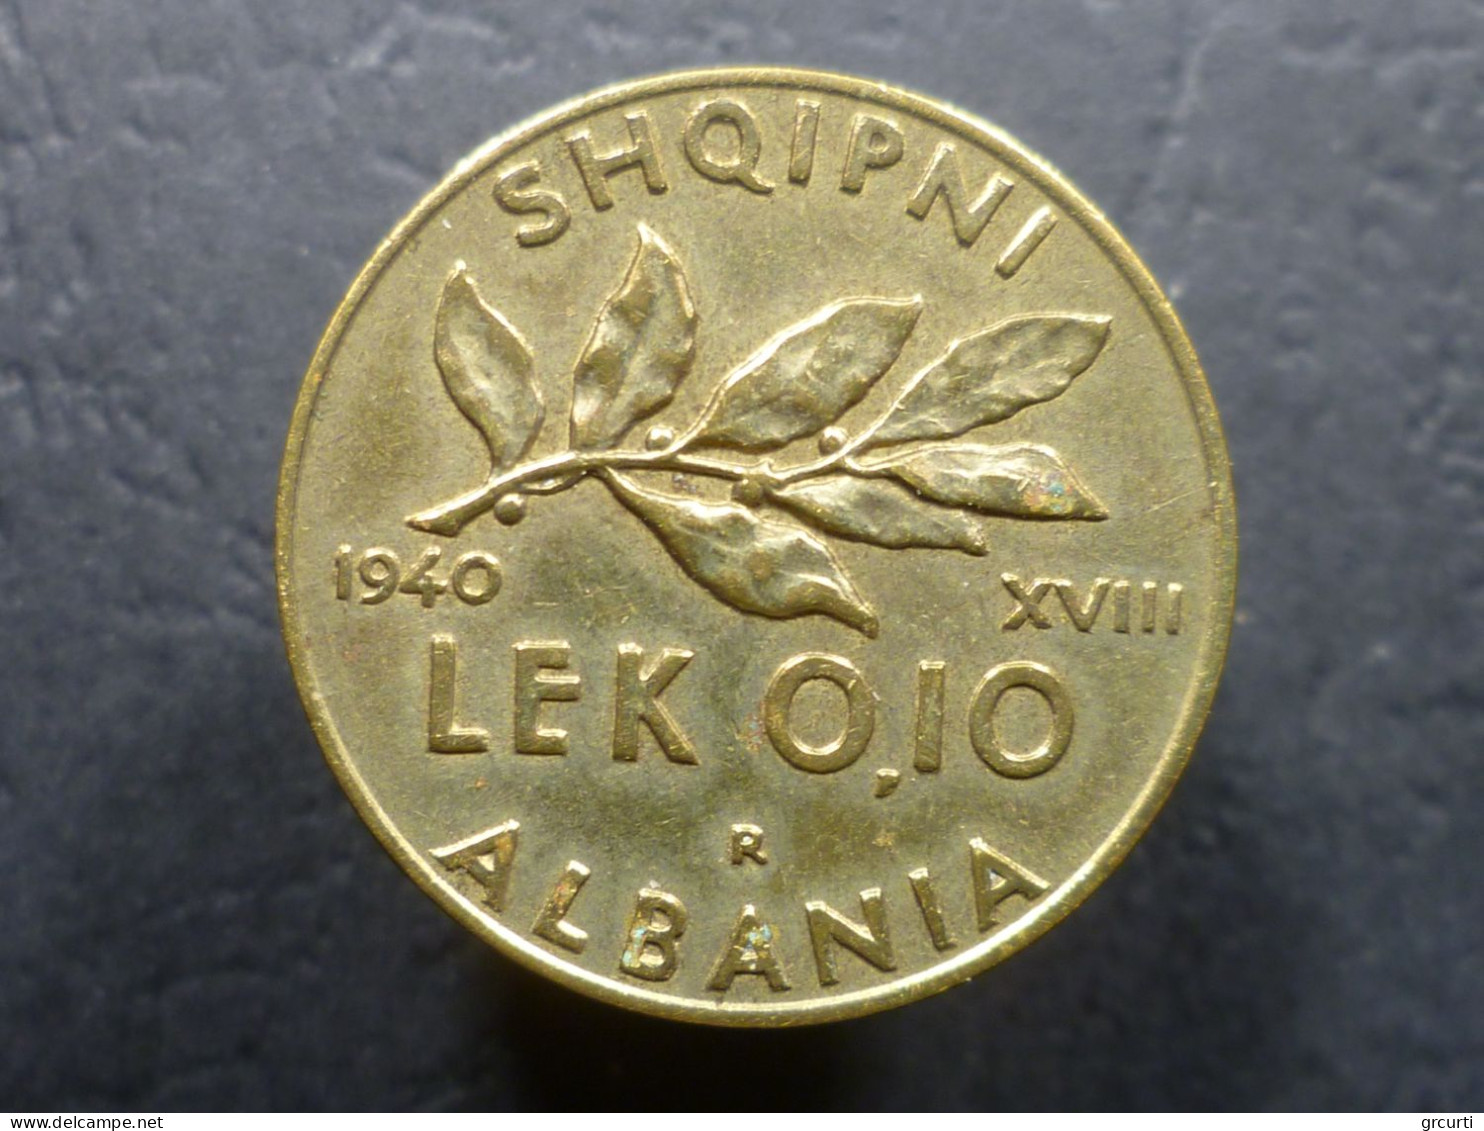 Albania - Colonia Italiana - Lotto di 5 monete